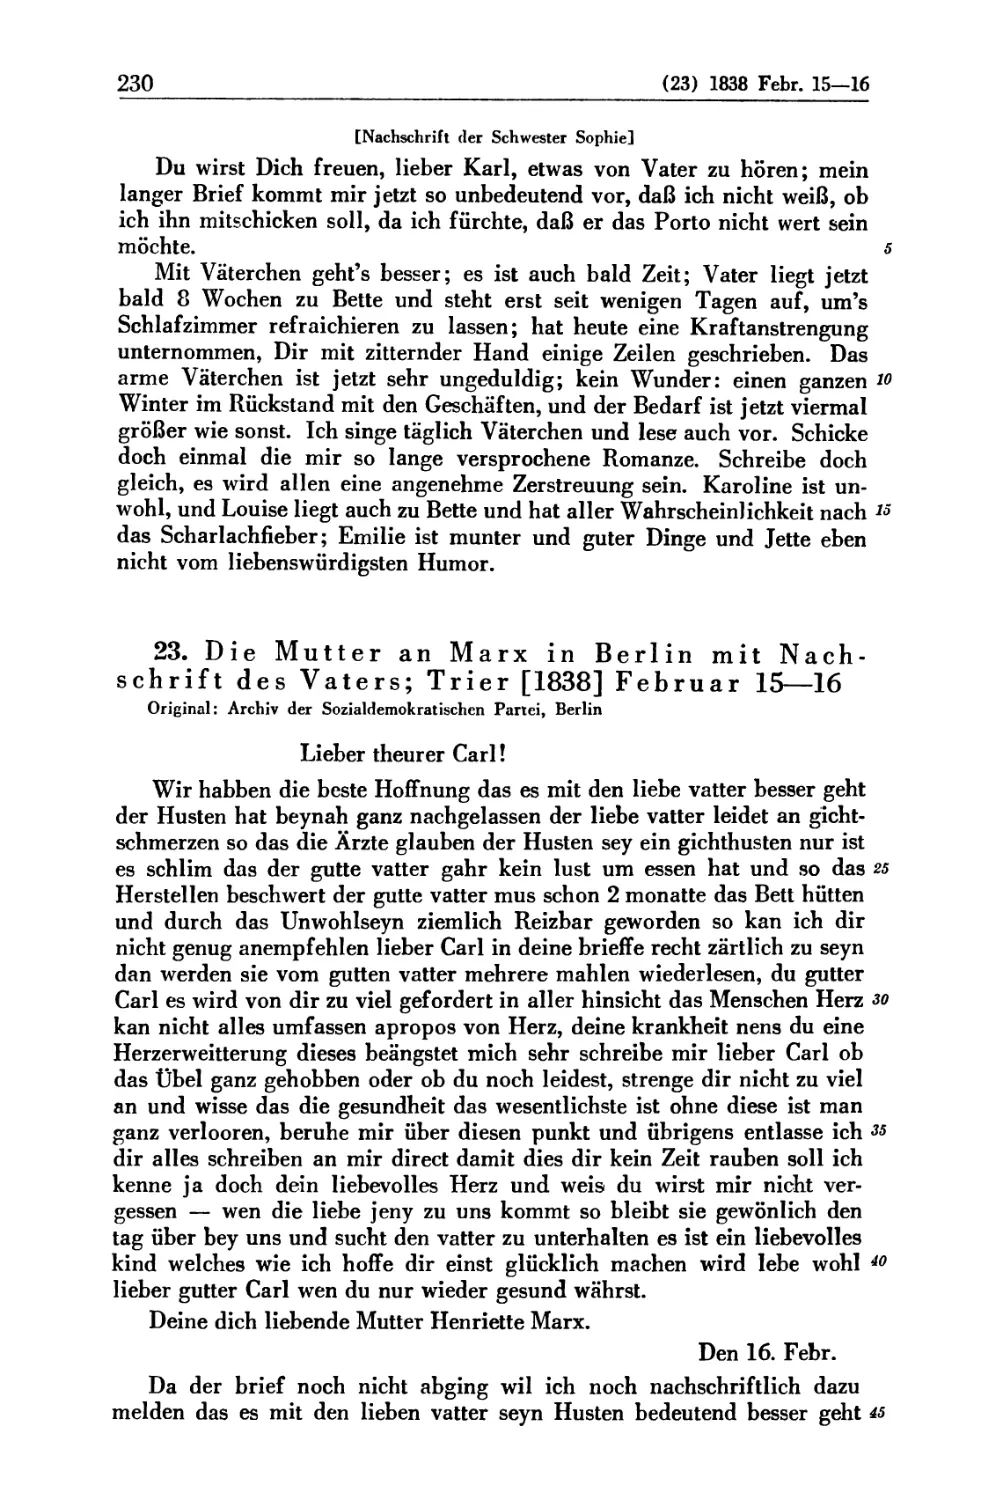 23. Die Mutter an Marx in Berlin mit Nachschrift des Vaters; Trier [1838] Februar 15 — 16